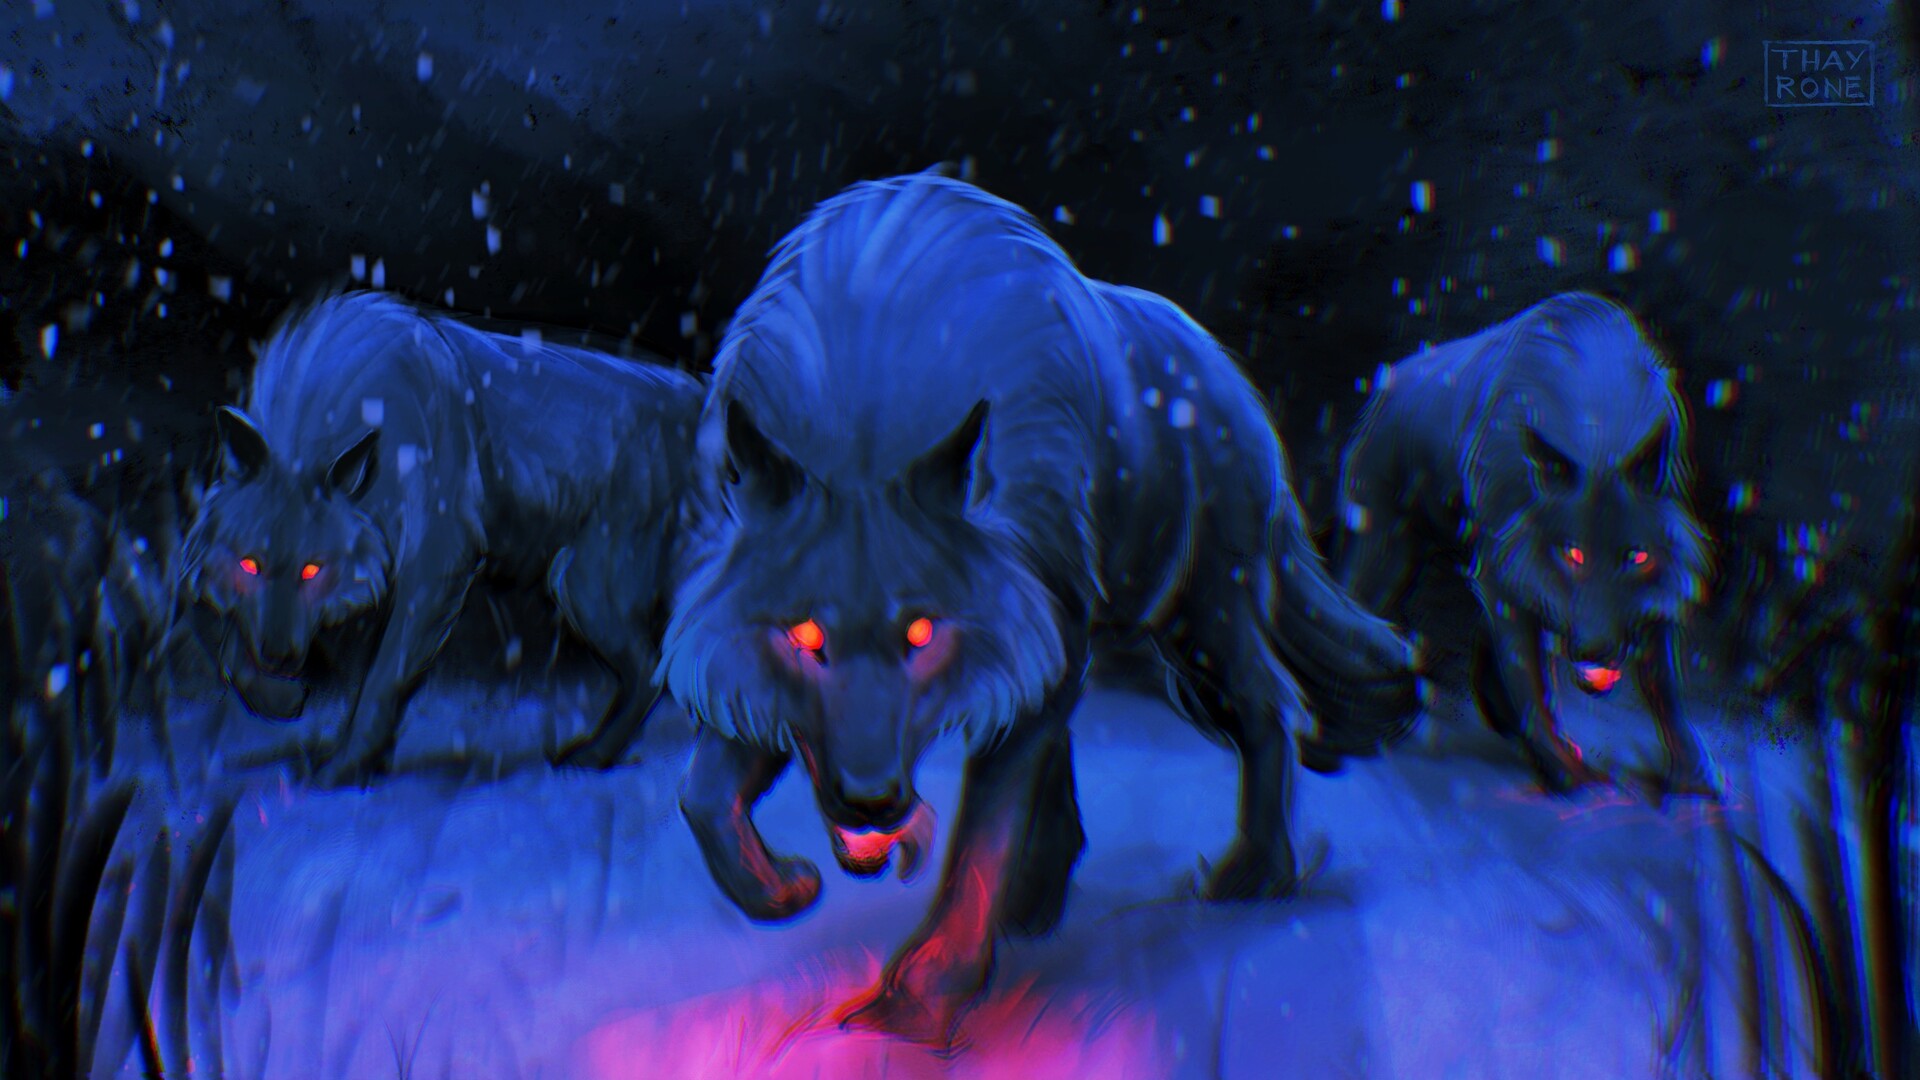 ArtStation - Night wolves